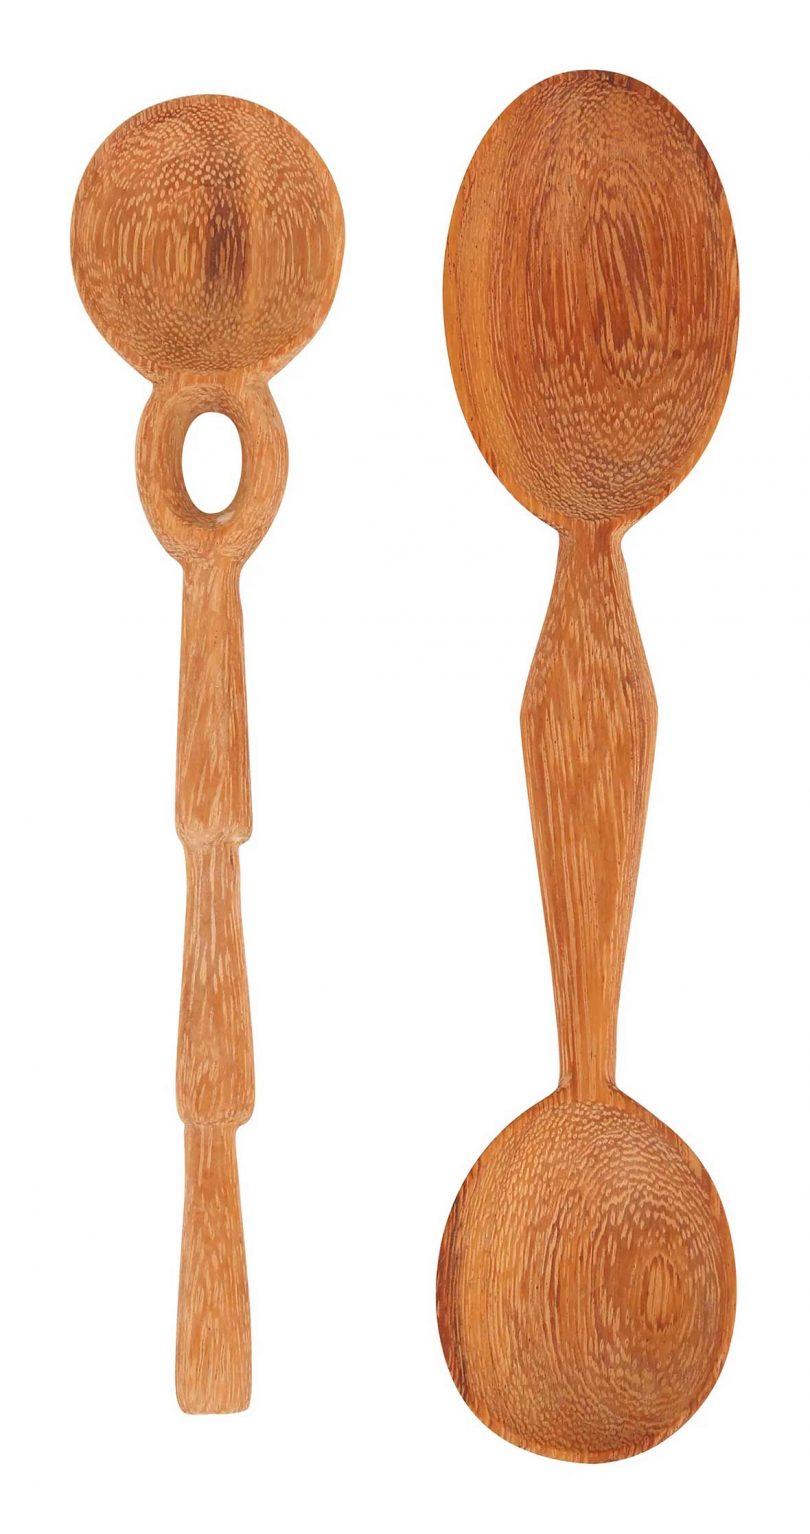 دو قاشق چوبی حکاکی شده با دست